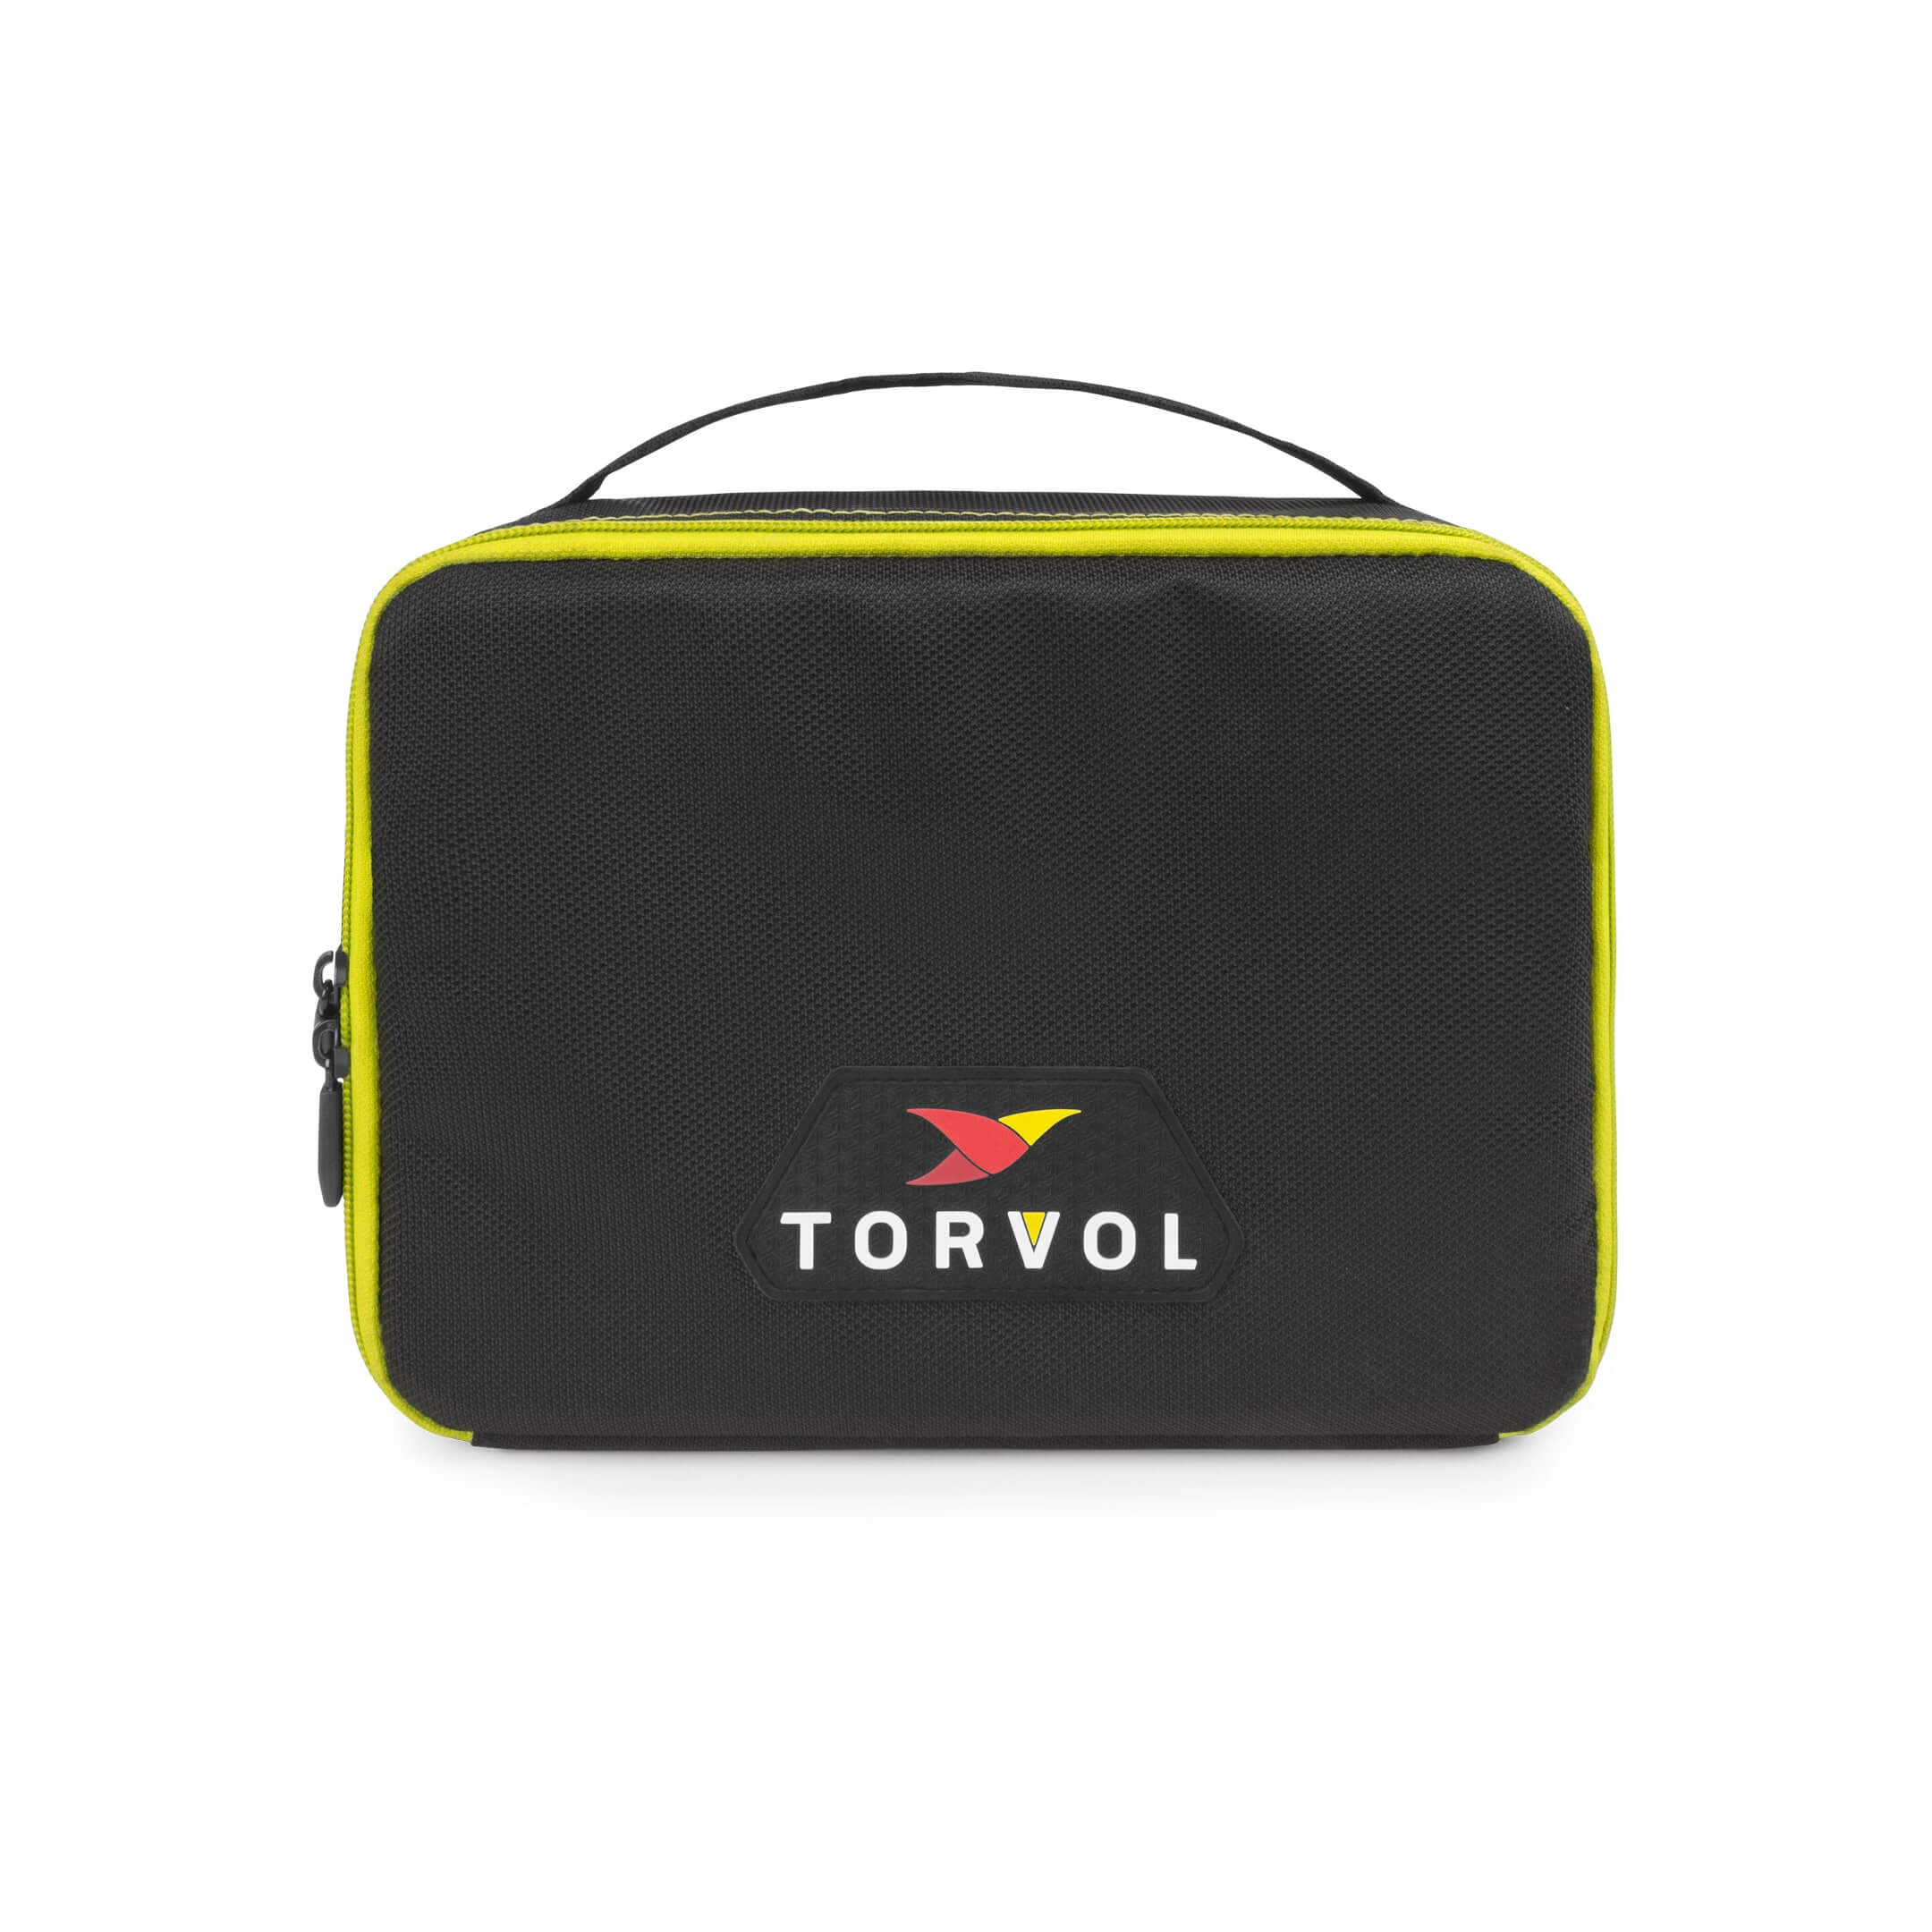 Torvol LiPo Akku Battery Safe Pouch FPV Drohnen (Brandschutz) Tasche